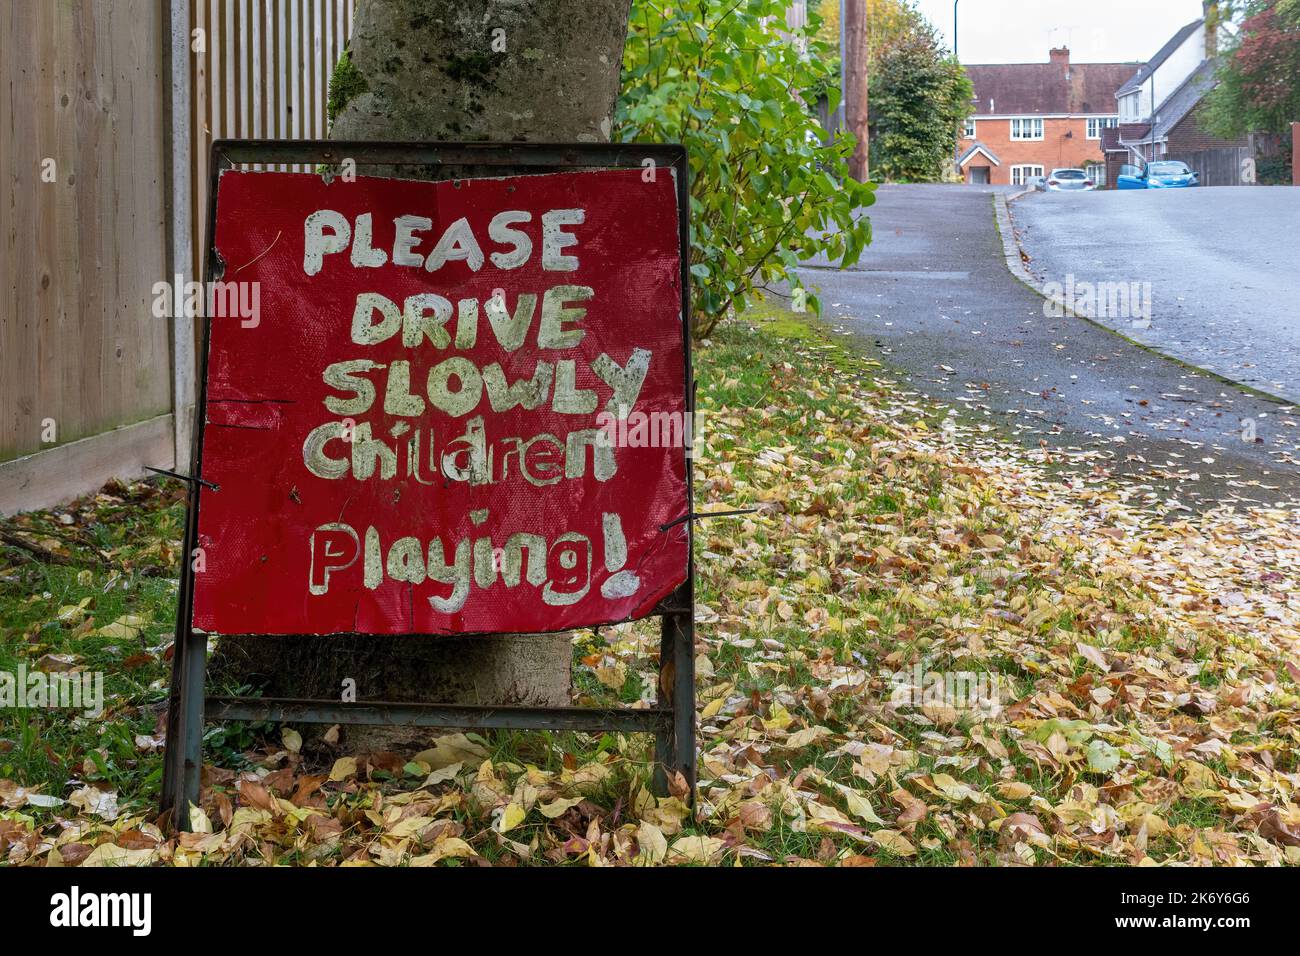 Si prega di guidare lentamente i bambini che giocano, cartello rosso nella zona residenziale, Regno Unito Foto Stock